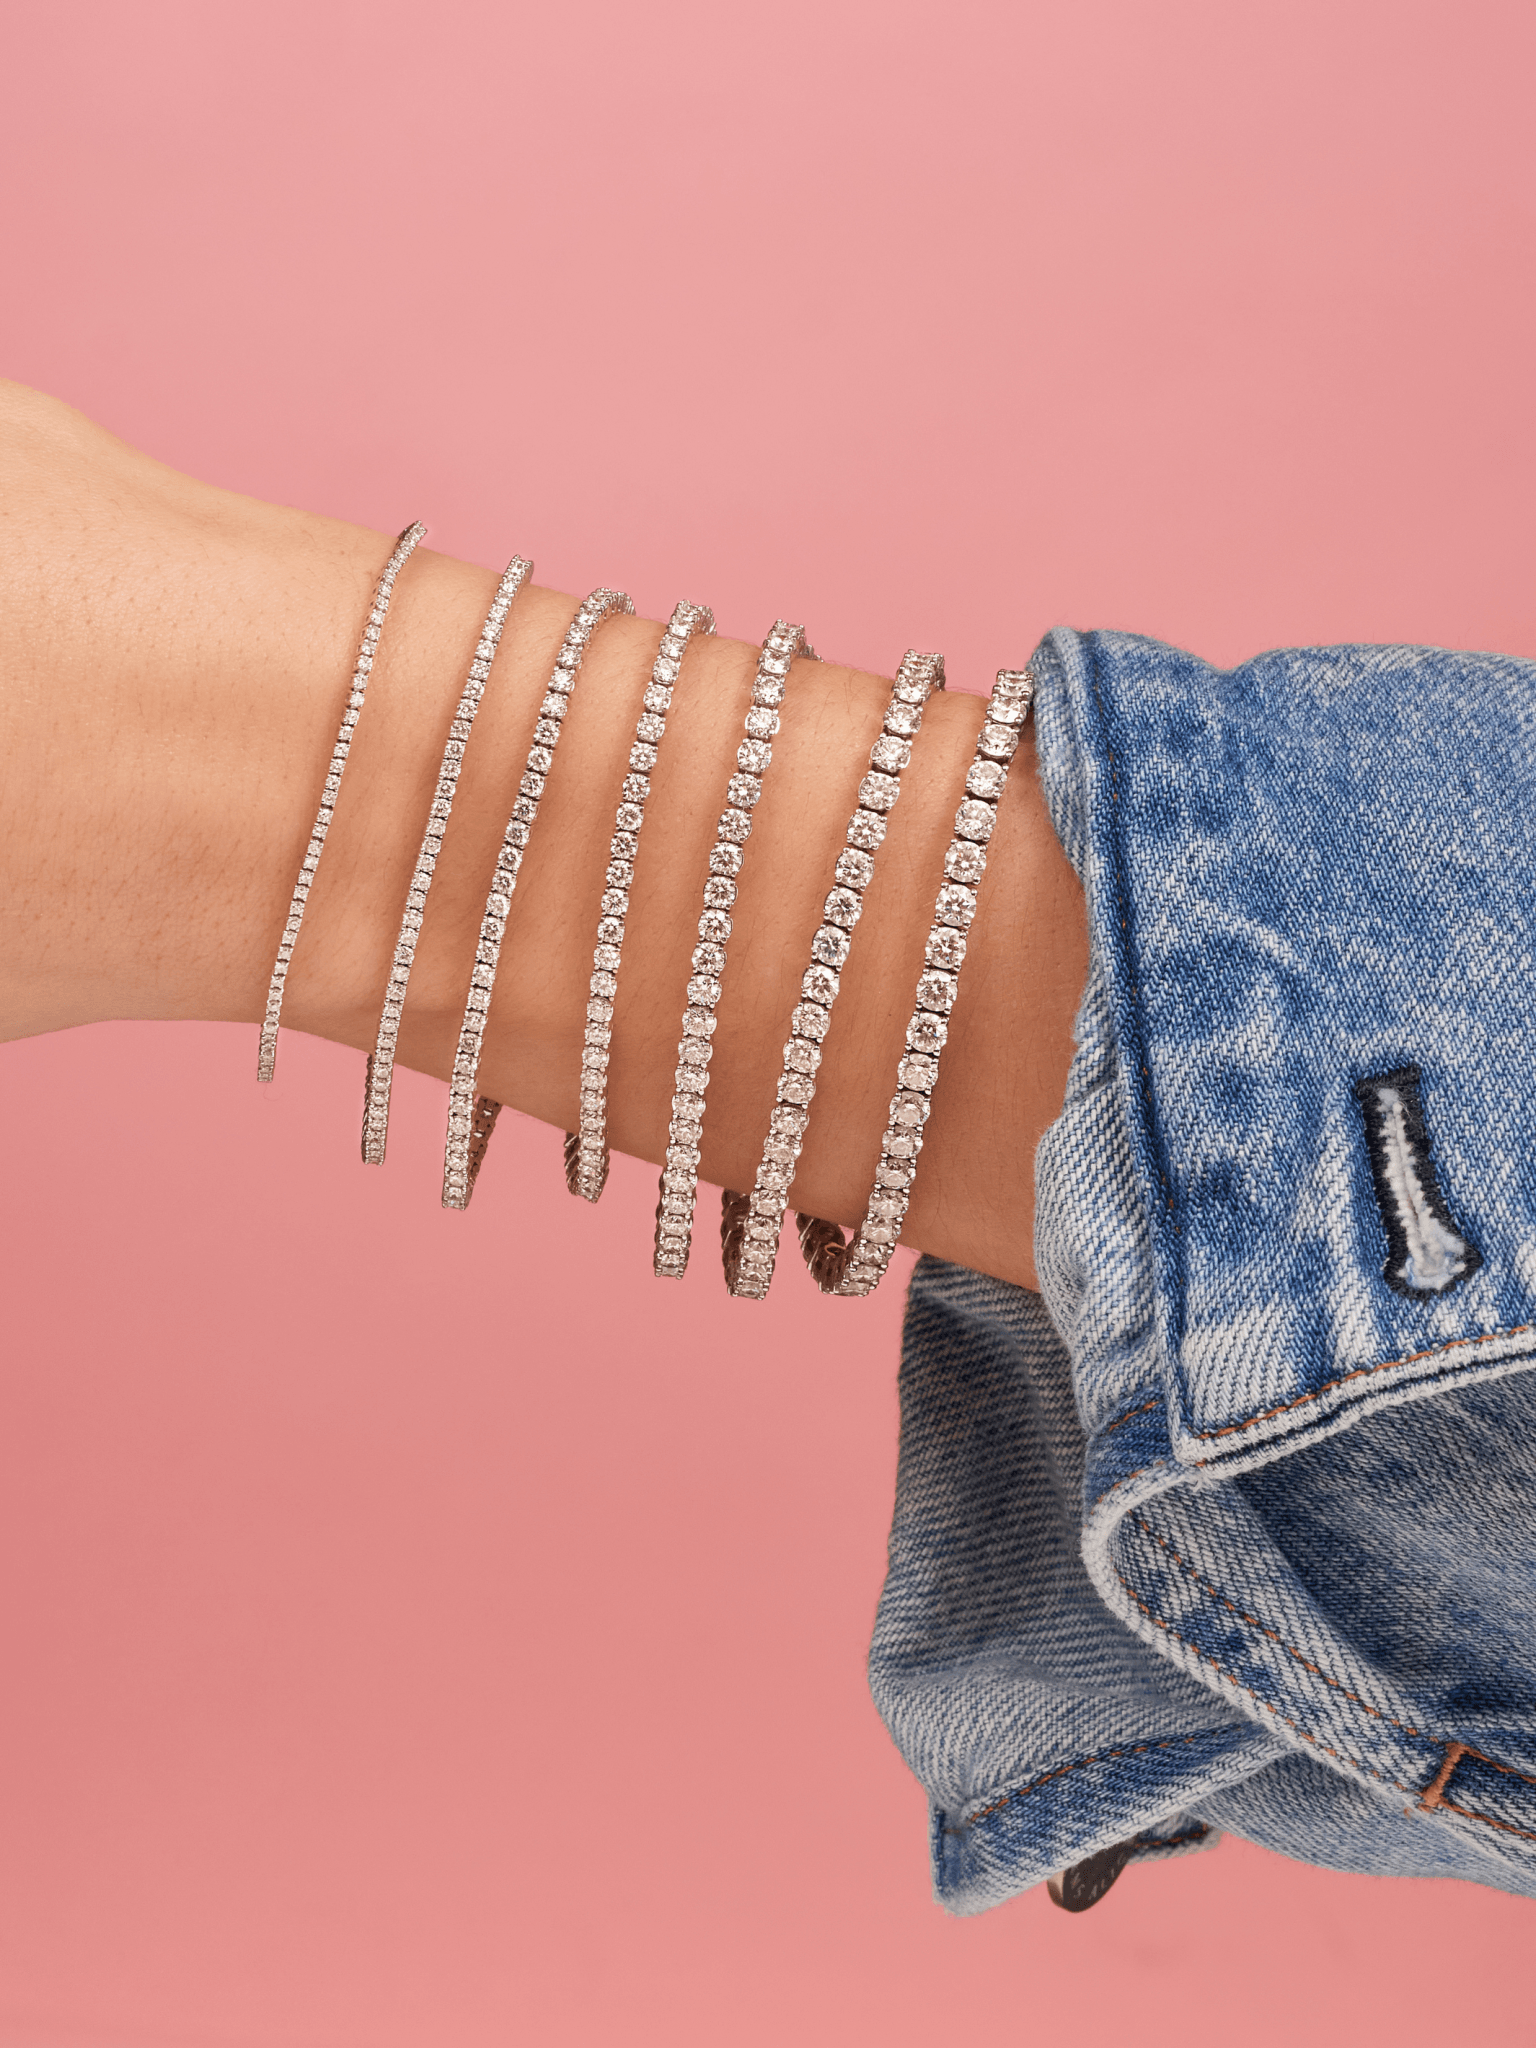 Buy American Diamond Bracelet for Women at Online.